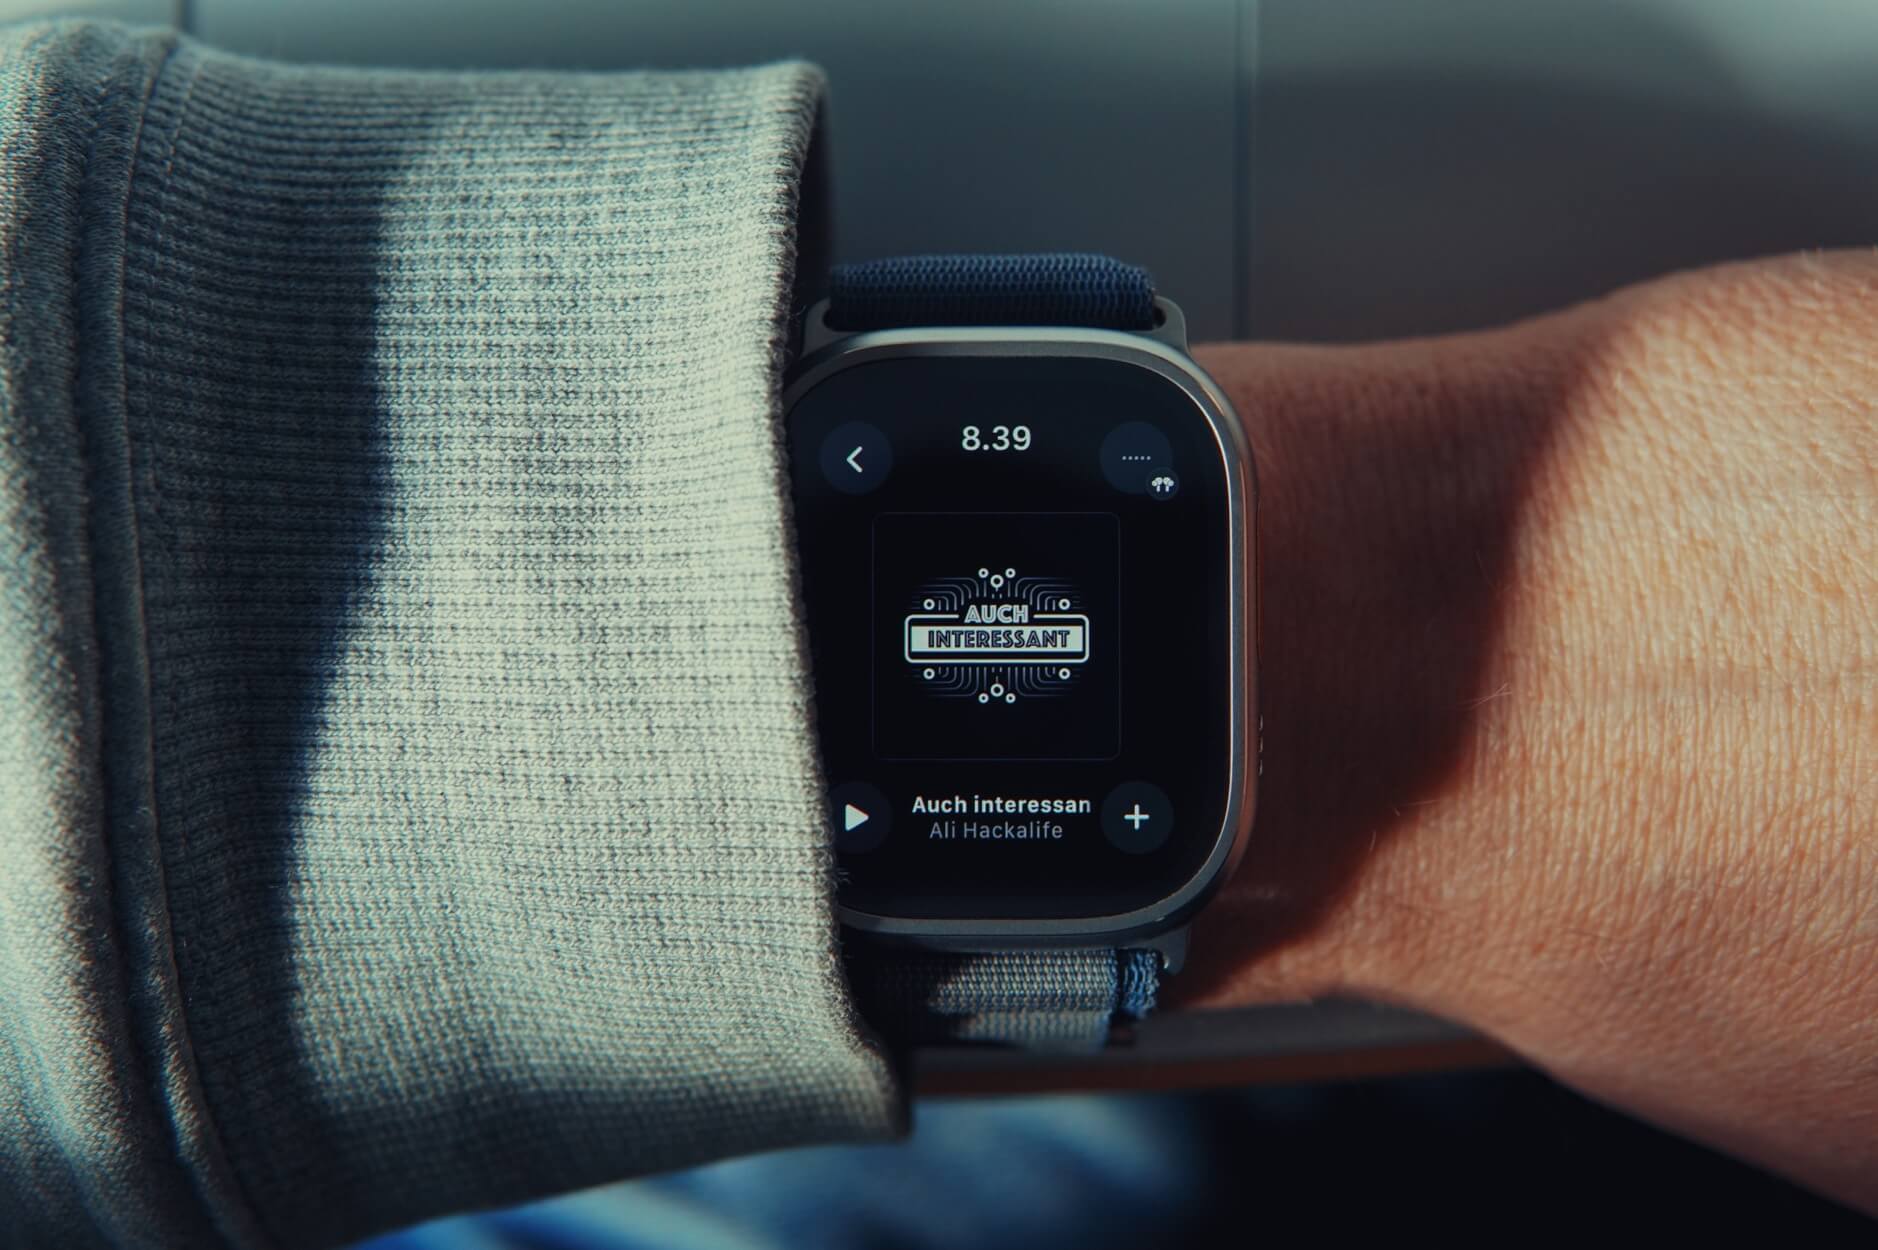 Das Bild zeigt eine Apple Watch an einem Arm, der einen grauen, gestrickten Pullover oder Ärmel trägt. Die Uhr zeigt die Zeit 8:39 und den Text "Auch interessant" zusammen mit einer Fortschrittsanzeige an.